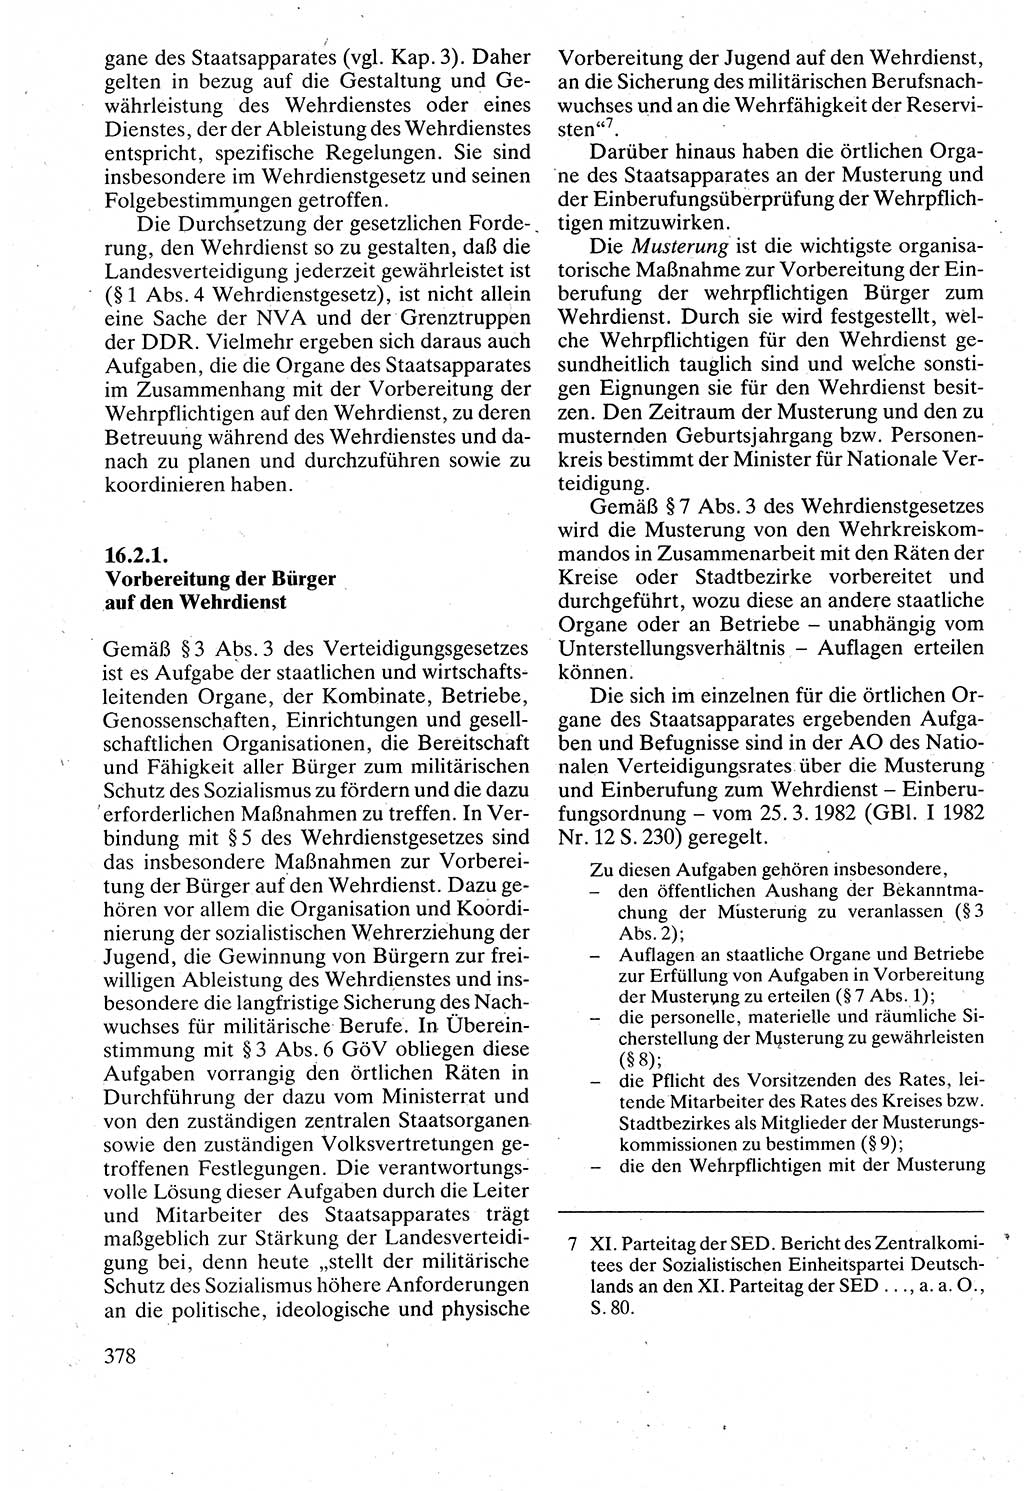 Verwaltungsrecht [Deutsche Demokratische Republik (DDR)], Lehrbuch 1988, Seite 378 (Verw.-R. DDR Lb. 1988, S. 378)